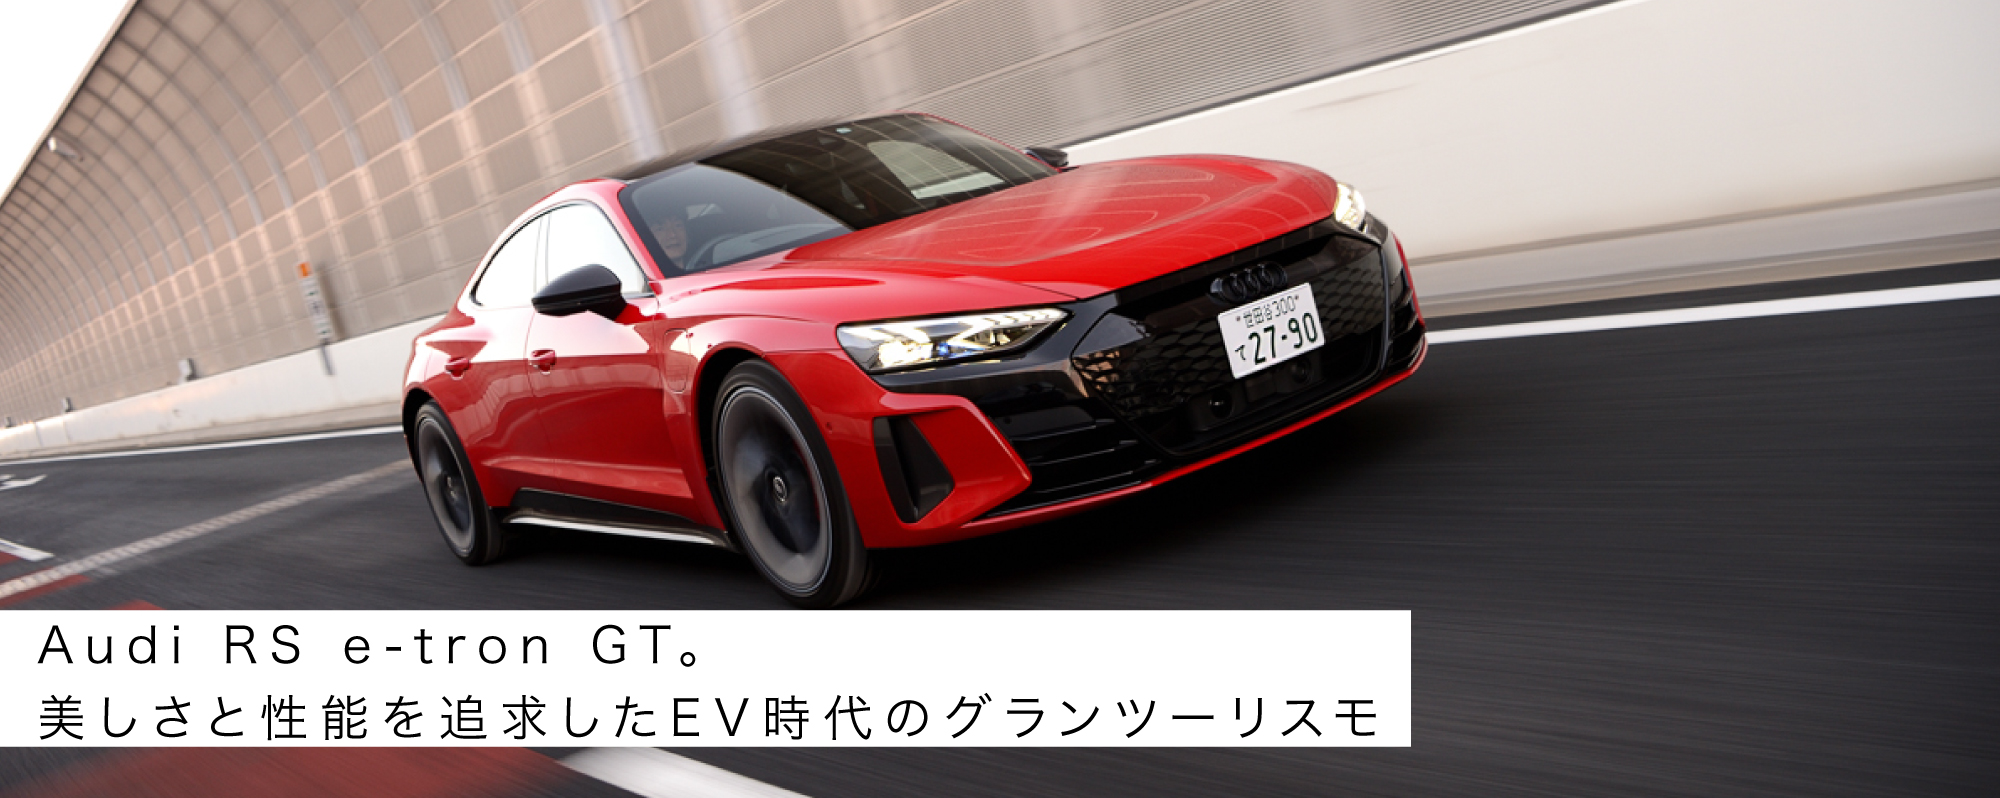 Audi RS e-tron GT。美しさと性能を追求したEV時代のグランツーリスモ